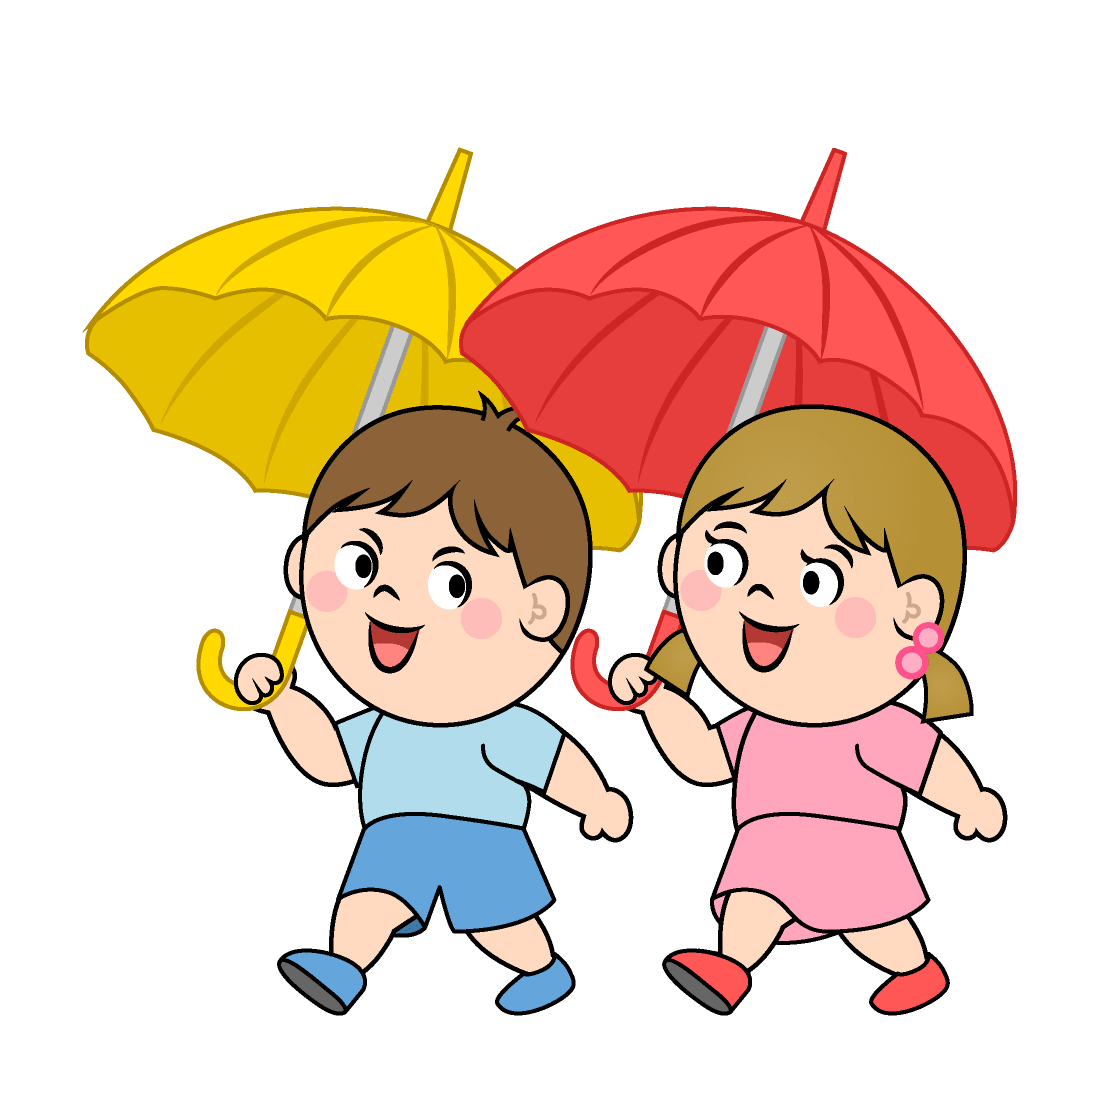 傘をさして歩く子供 イラスト素材 超多くの無料かわいいイラスト素材